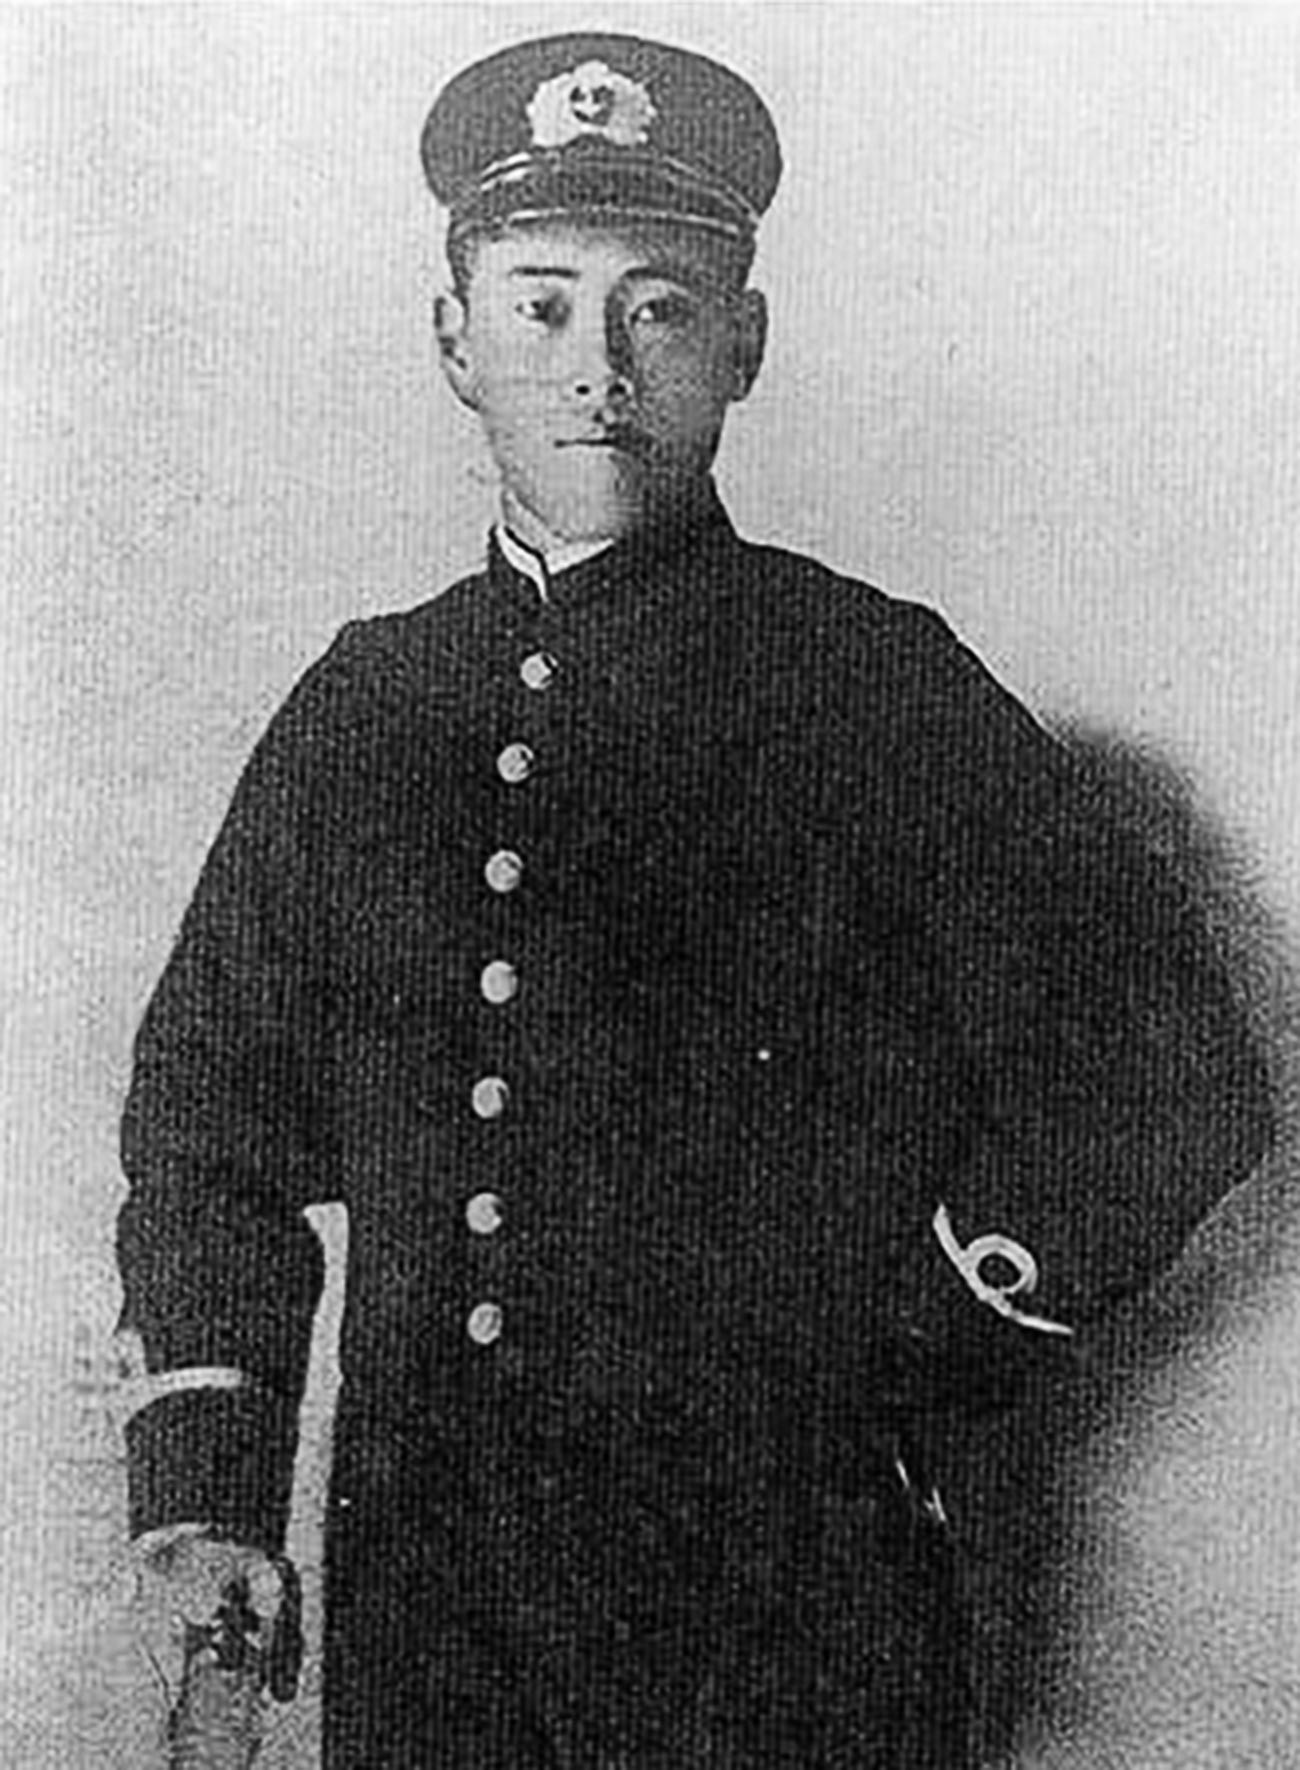 Исороку Јамамото во 1905 година, пред почетокот на руско-јапонската војна.
